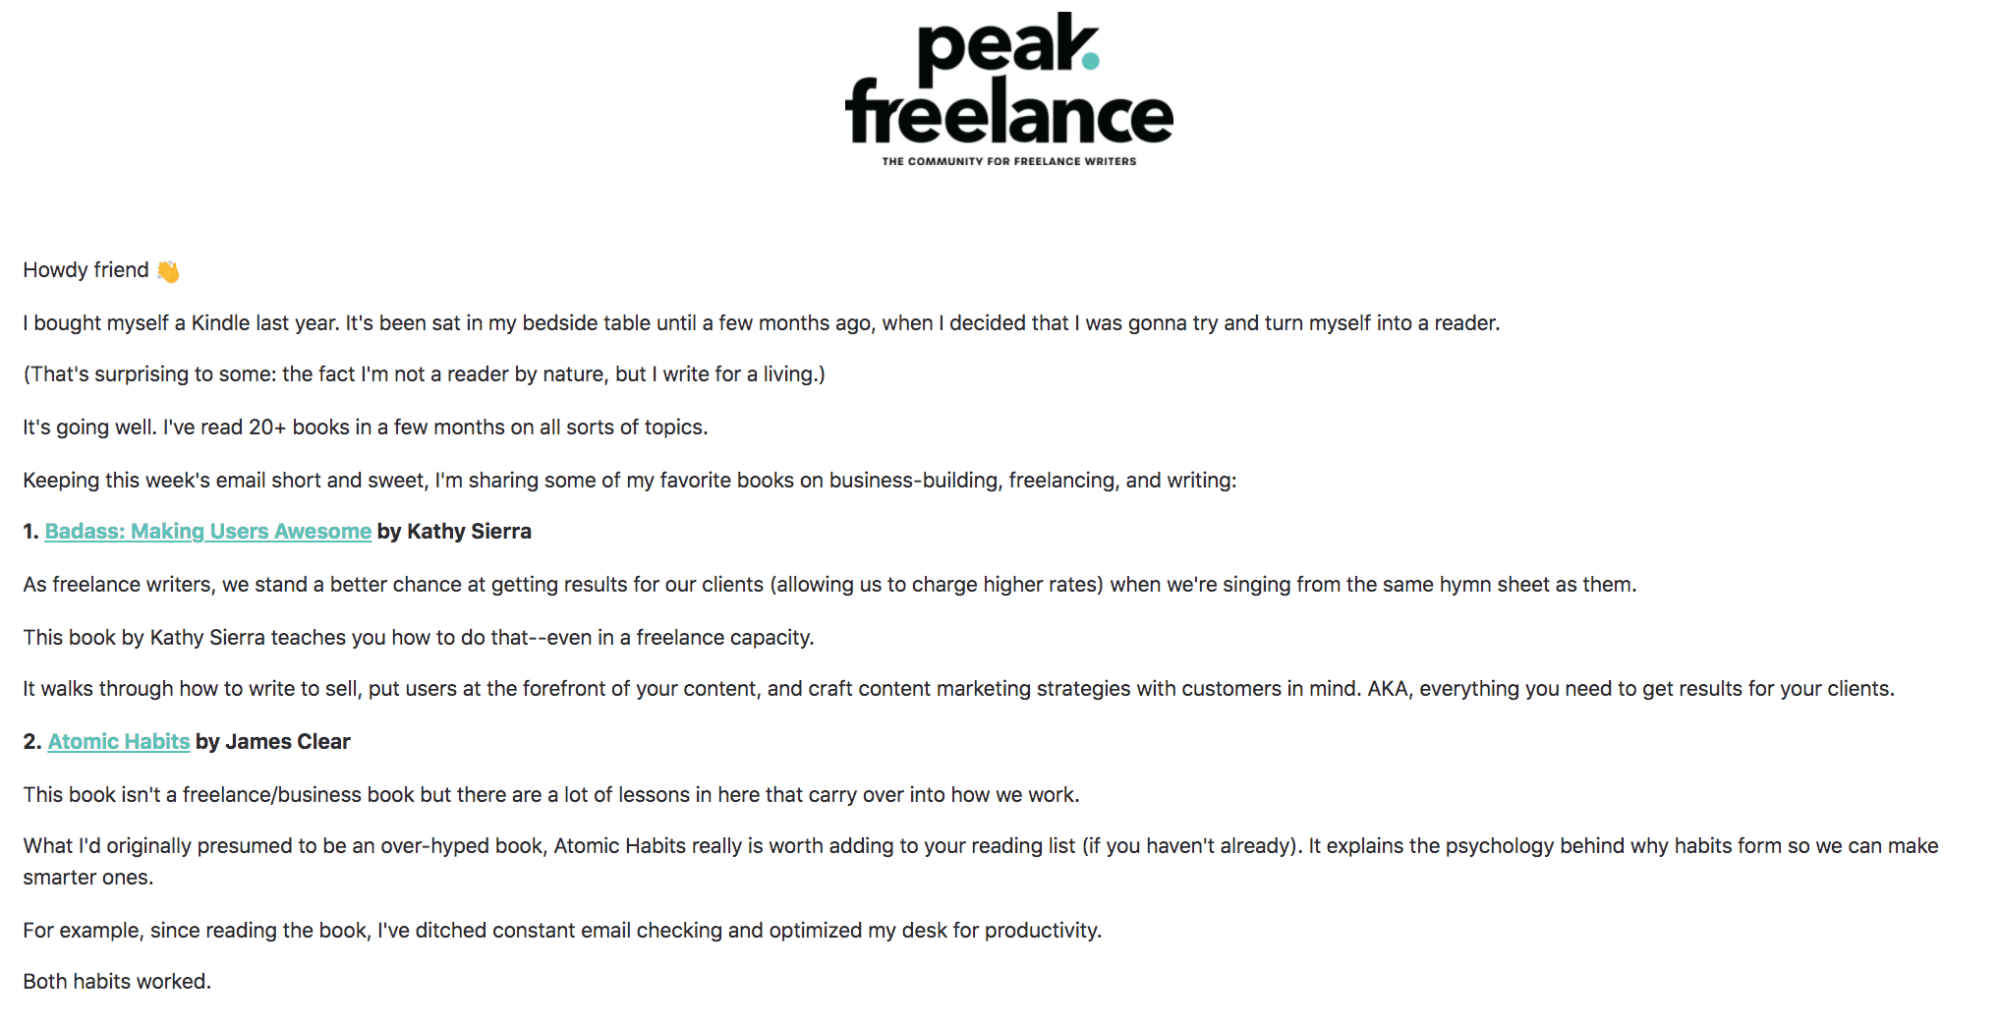 newsletter examples - peak freelance